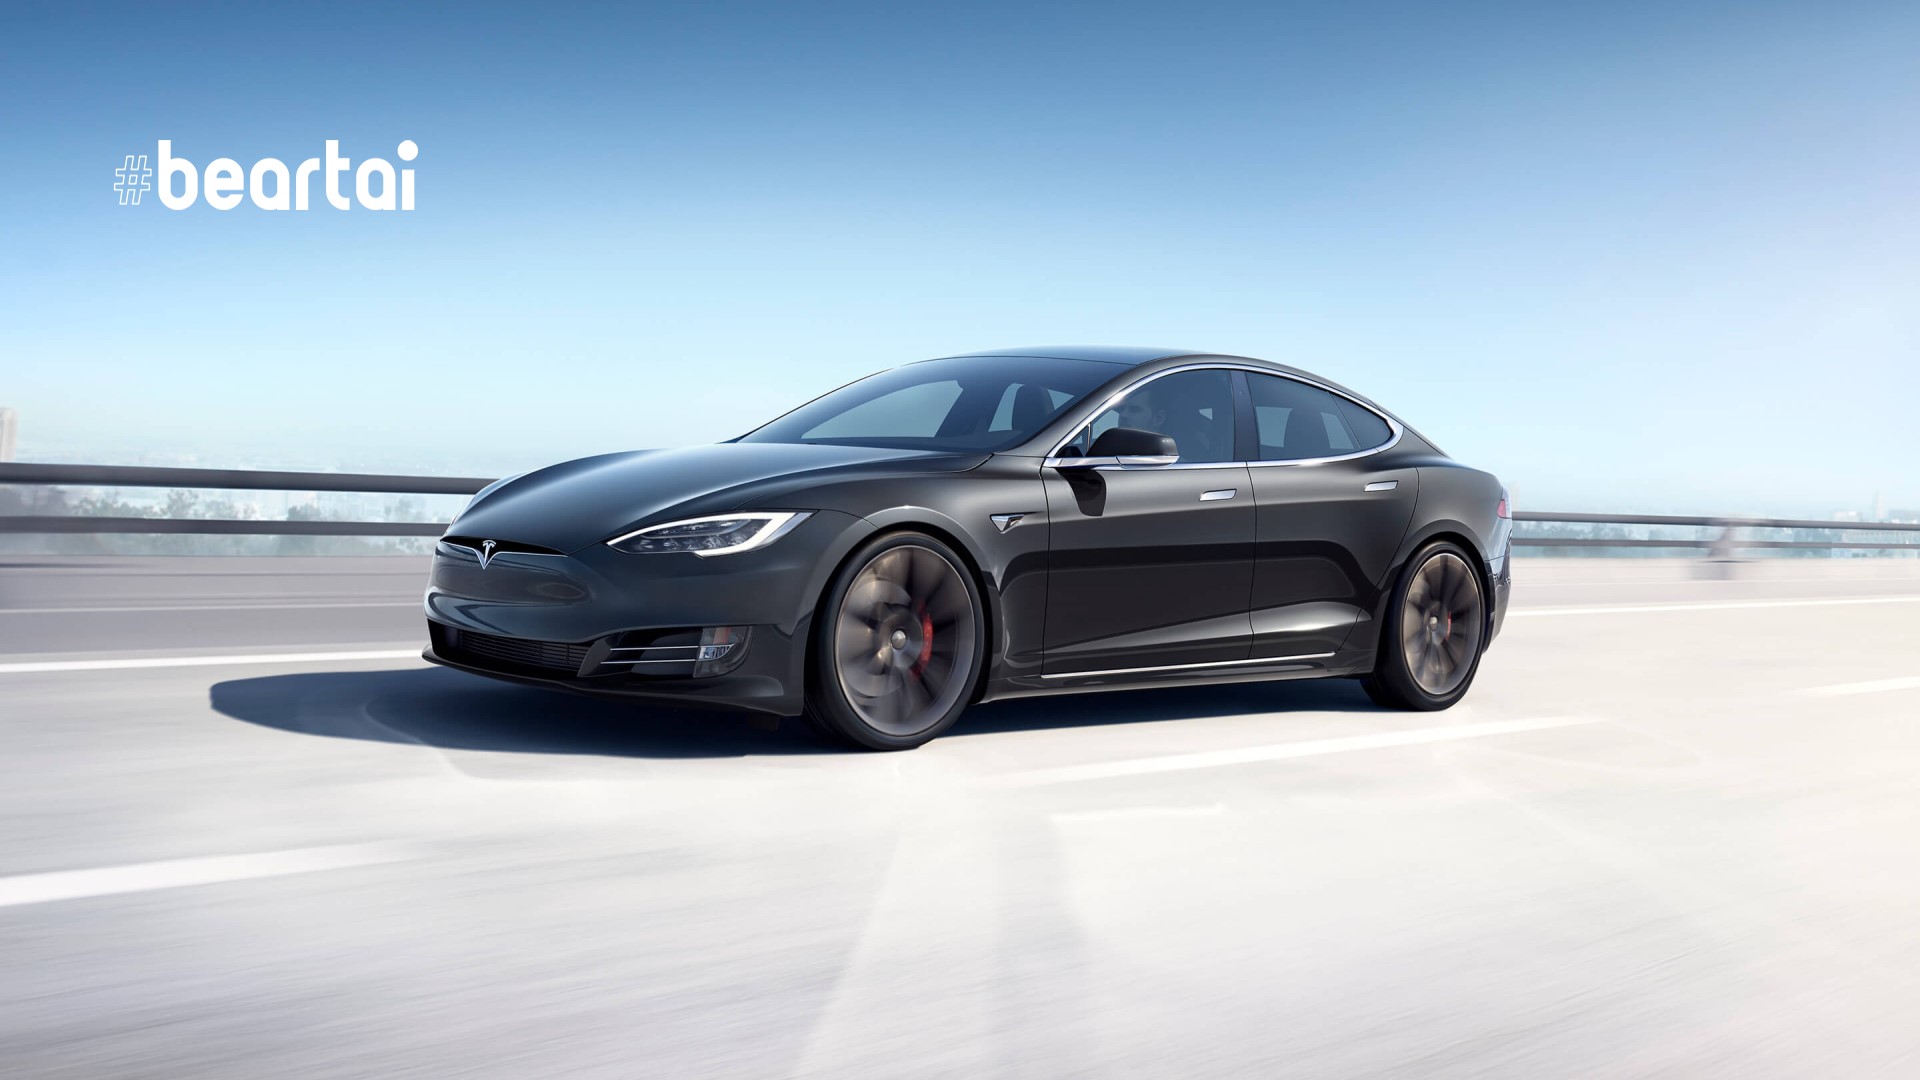 เกิดอะไรขึ้น! Tesla หั่นราคารถยนต์ Model S ทั้งในสหรัฐฯ และจีน